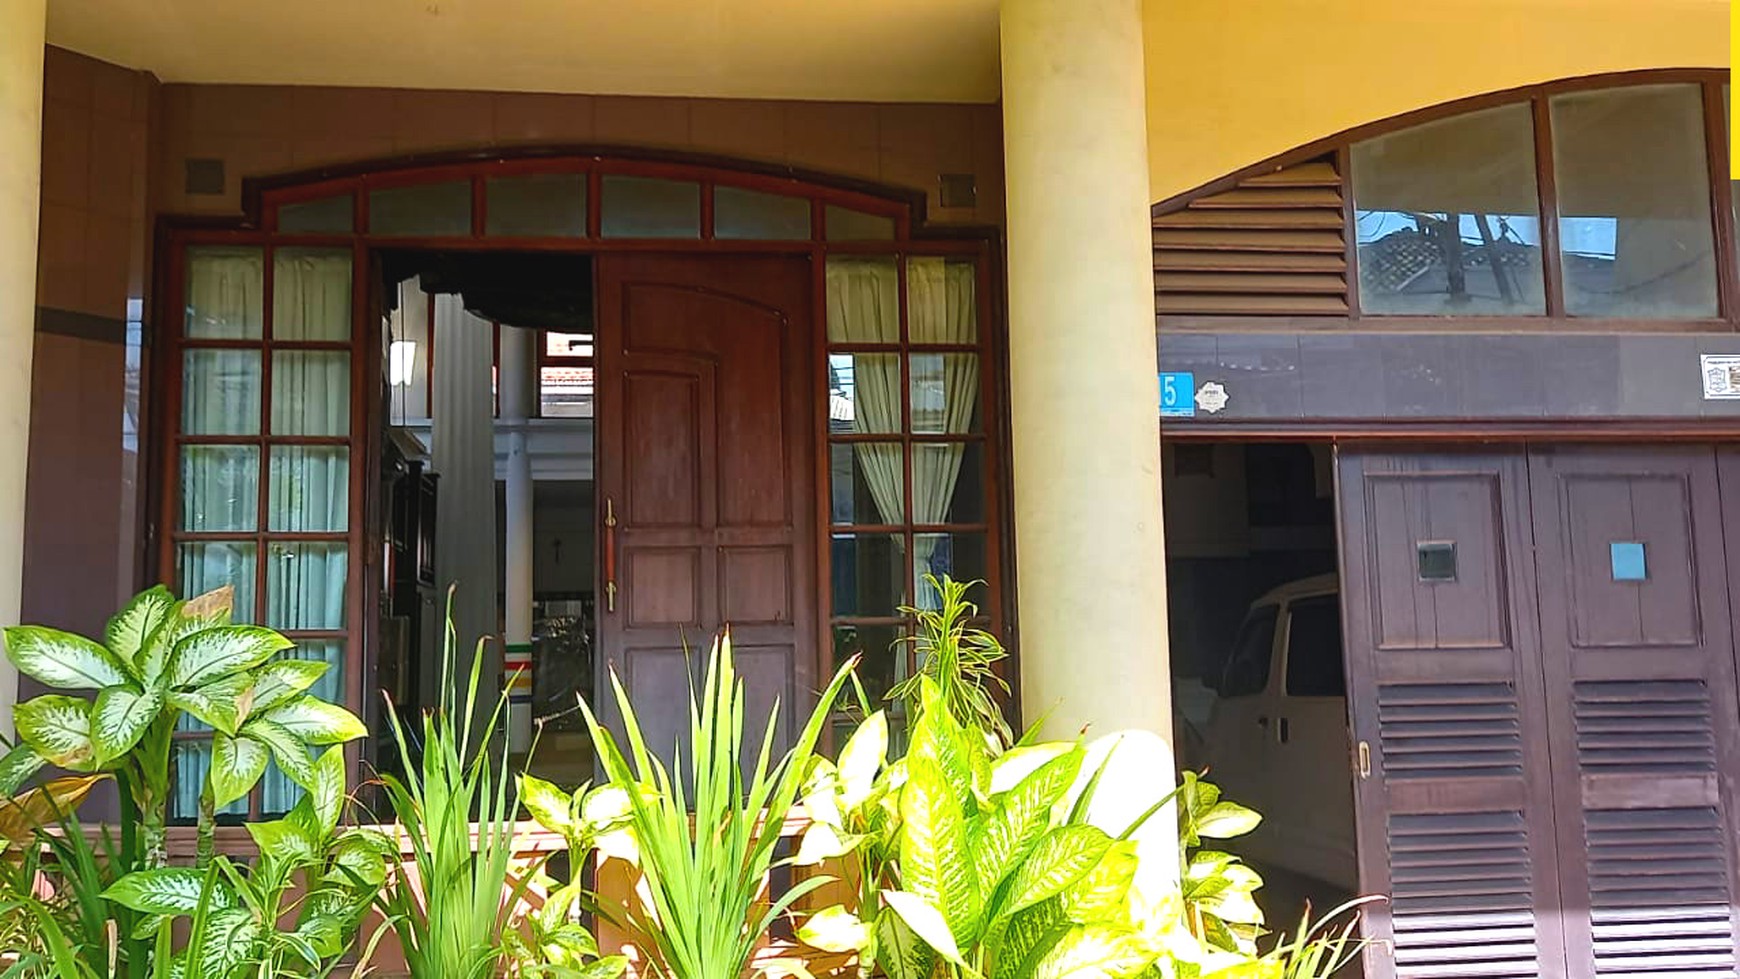 Dijual Rumah Klasik di Daerah Ramai Surabaya Kota